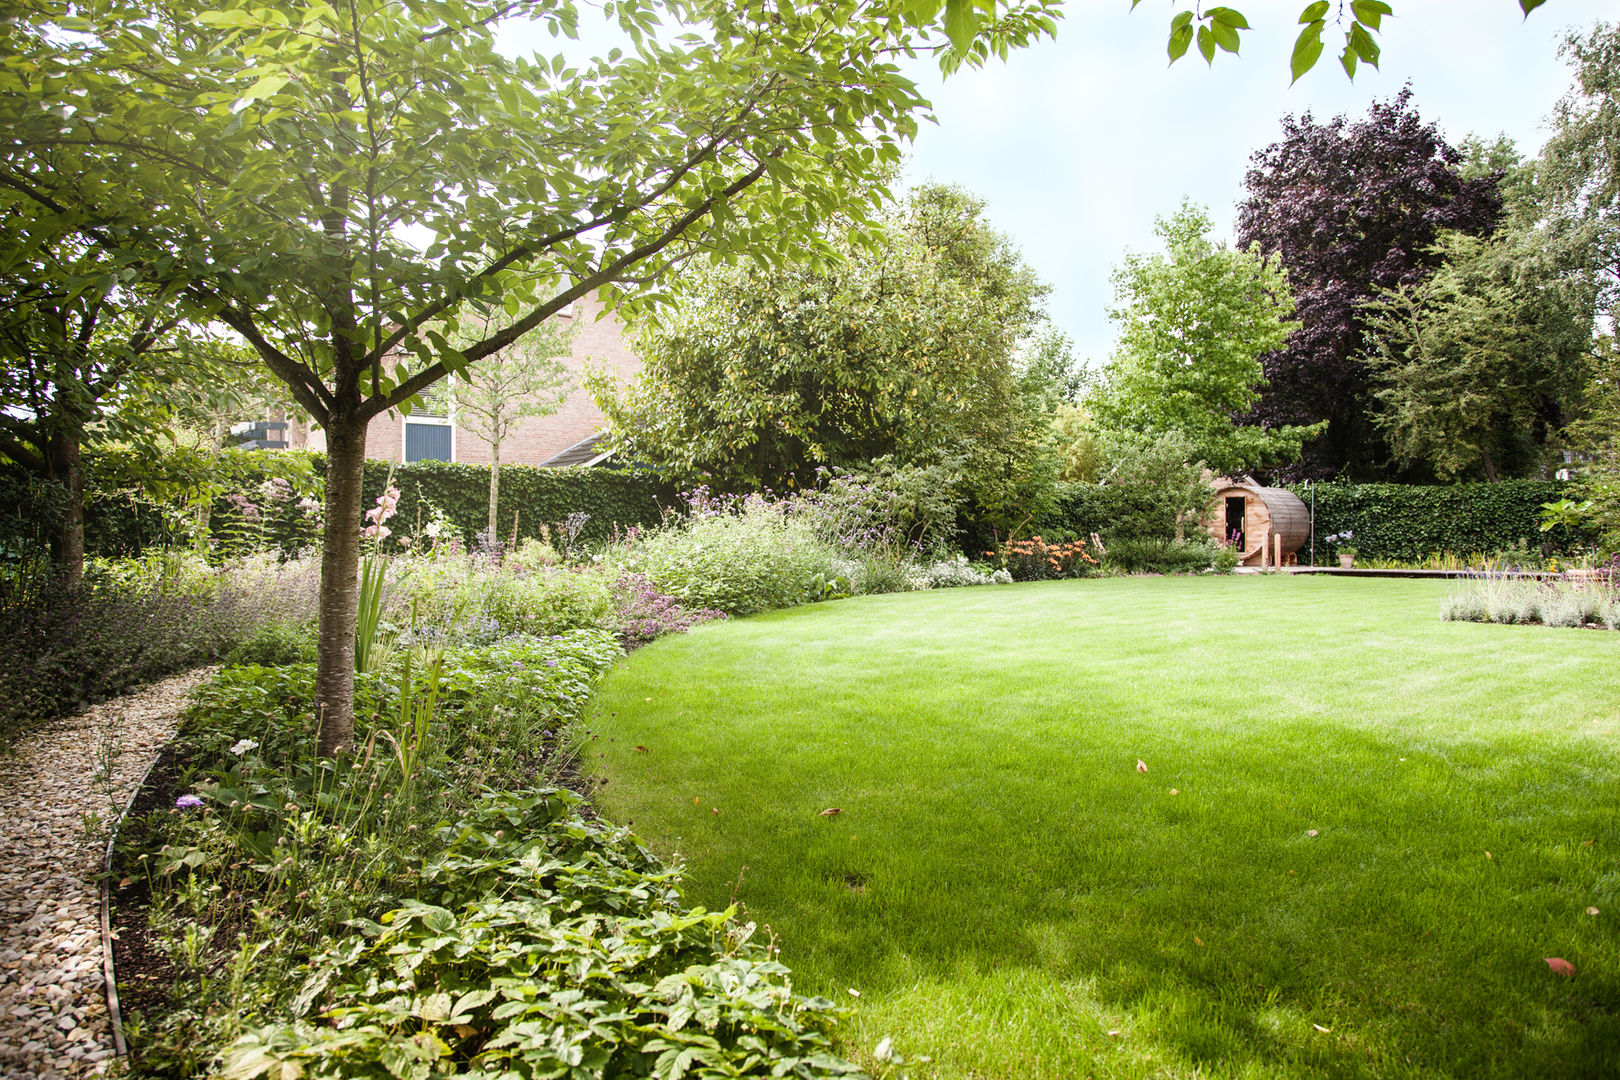 Wellness tuin verbonden met het landschap, Studio REDD exclusieve tuinen Studio REDD exclusieve tuinen Garten im Landhausstil